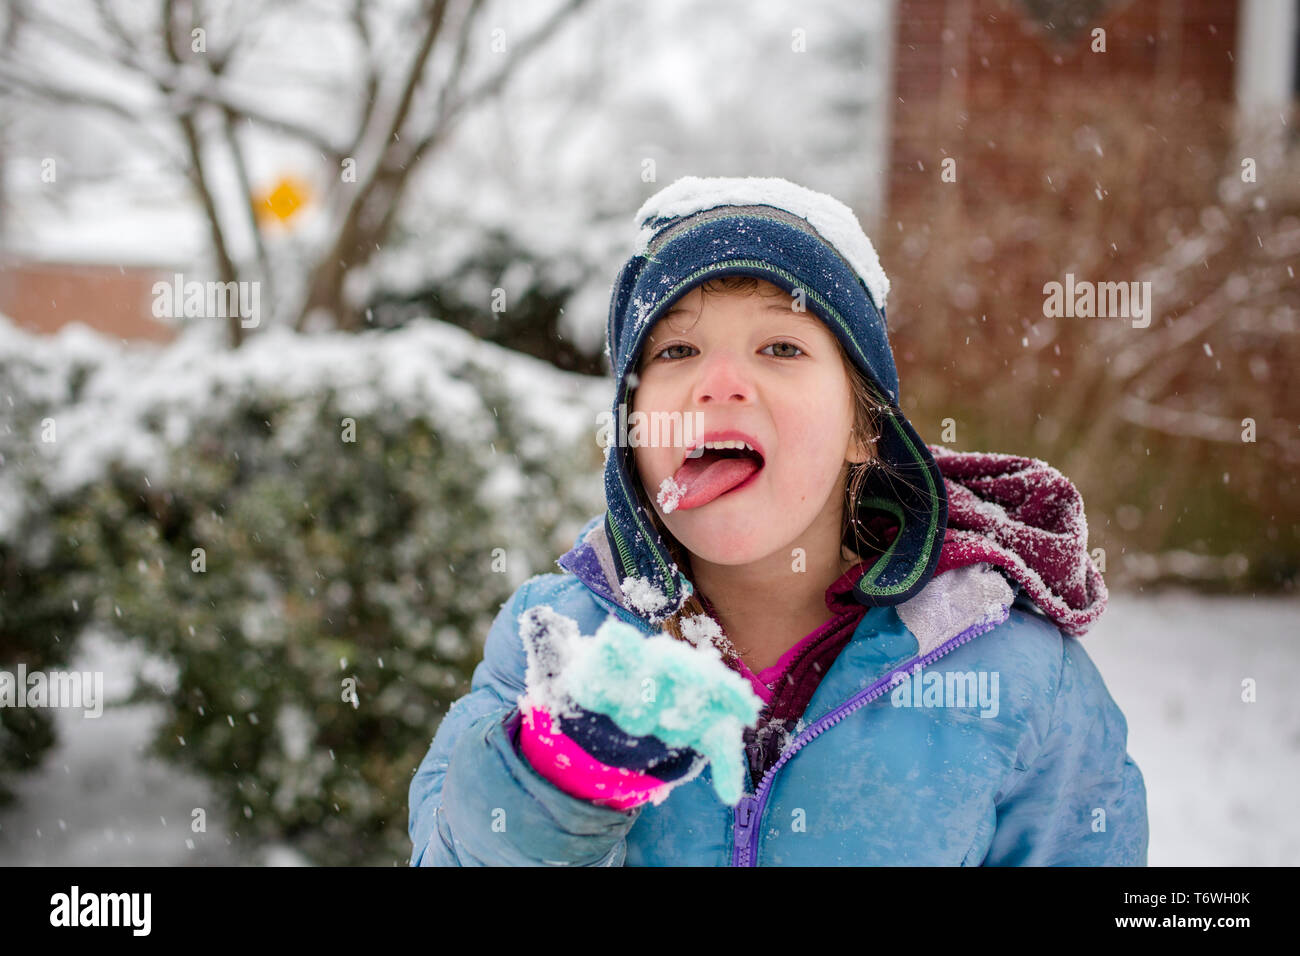 Haut de la moitié d'un petit enfant dans la neige qui tombe la neige de l'alimentation Banque D'Images